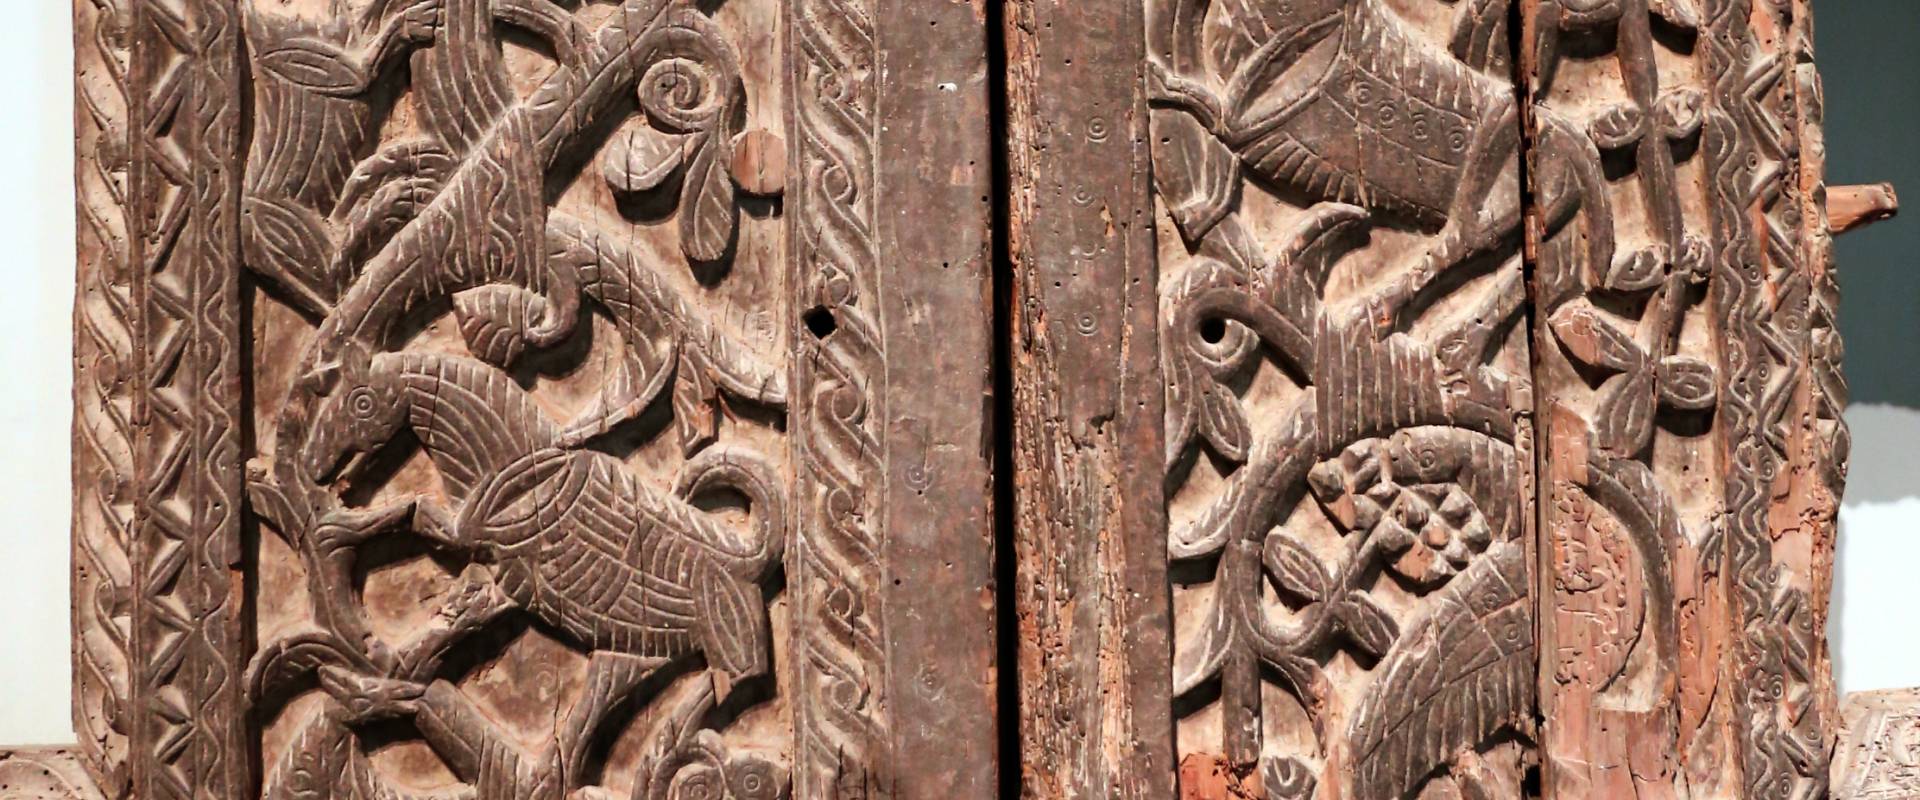 Portale di san bertoldo, in legno intagliato, dalla chiesa di s. alessandro a parma, x secolo 02 foto di Sailko